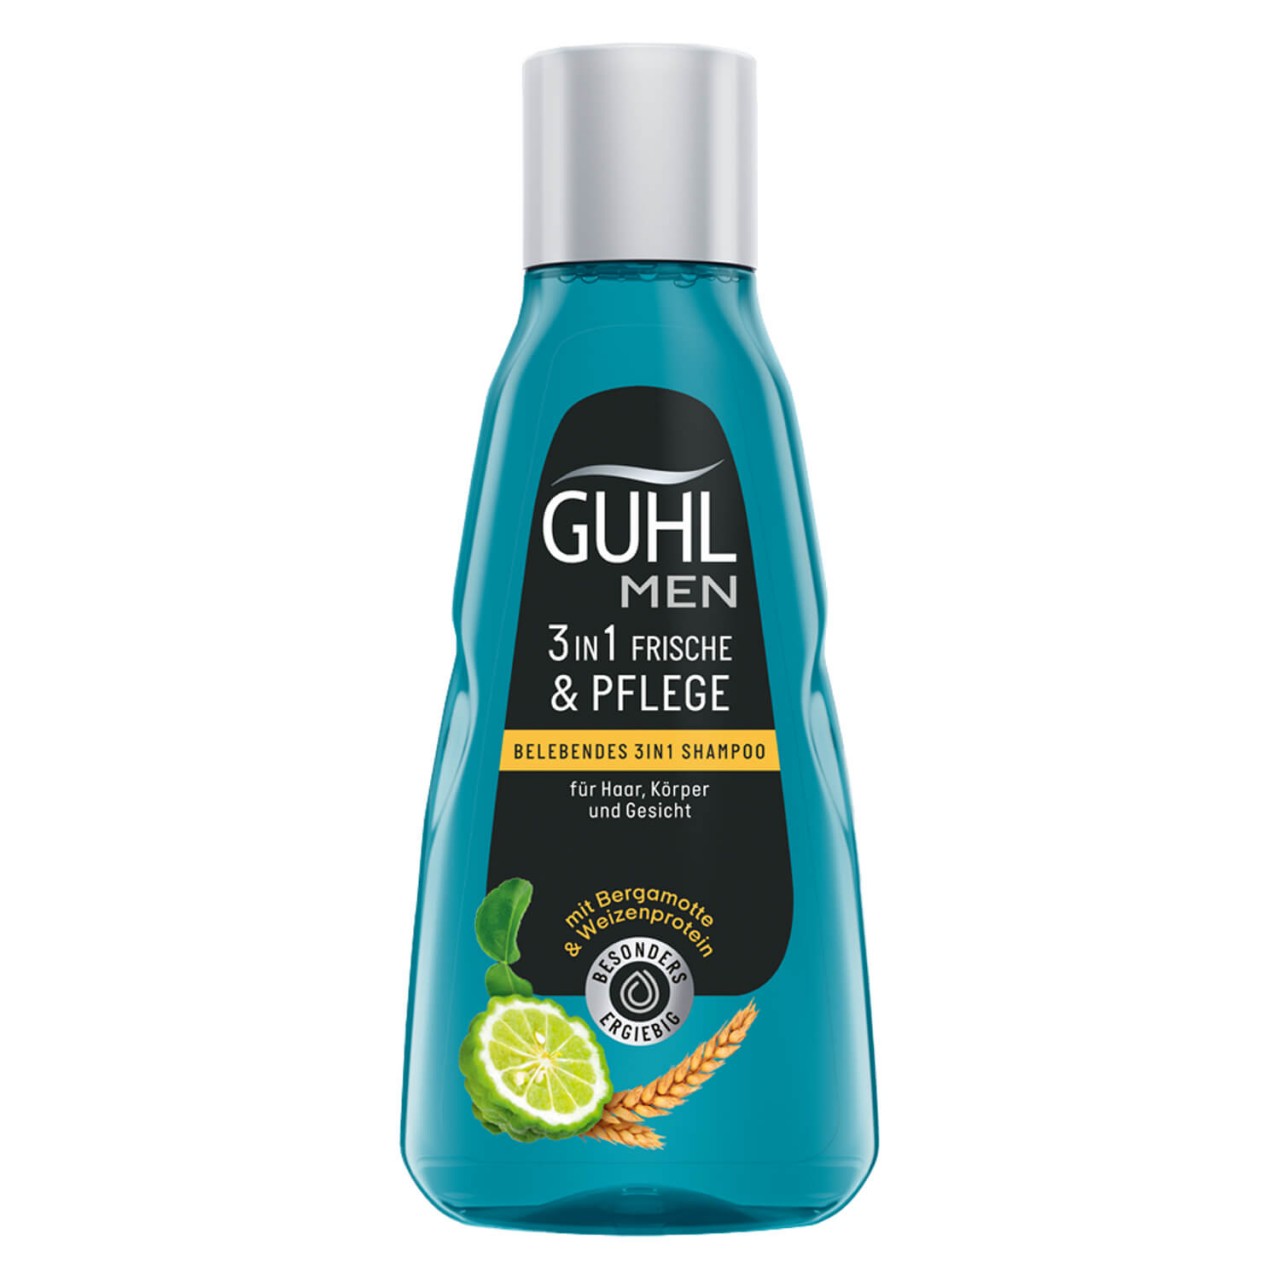 GUHL - MEN FRISCHE & PFLEGE Belebendes 3in1 Shampoo von GUHL